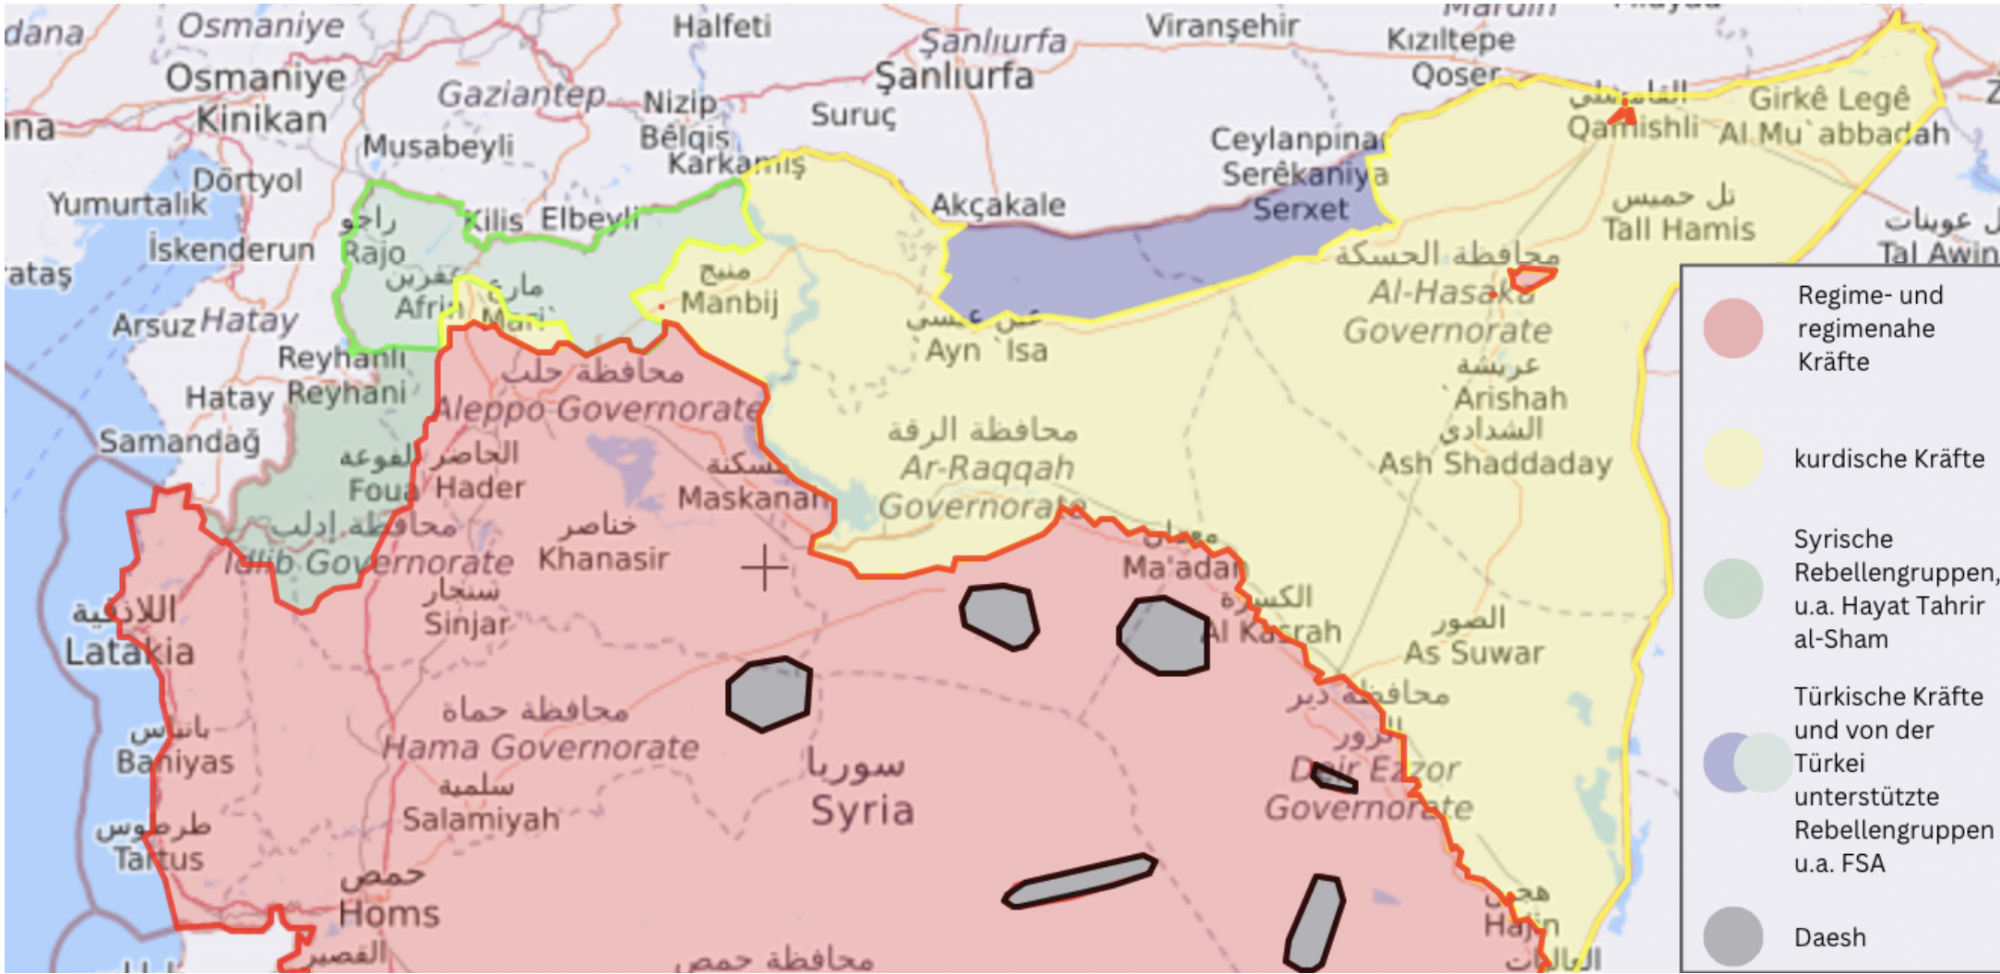 Karte von Nordsyrien. Welche Streitkräfte kontrollieren welche Gebiete? Stand 15.02.2023. Quelle: Liveuamap, https://syria.liveuamap.‹⁄‹com